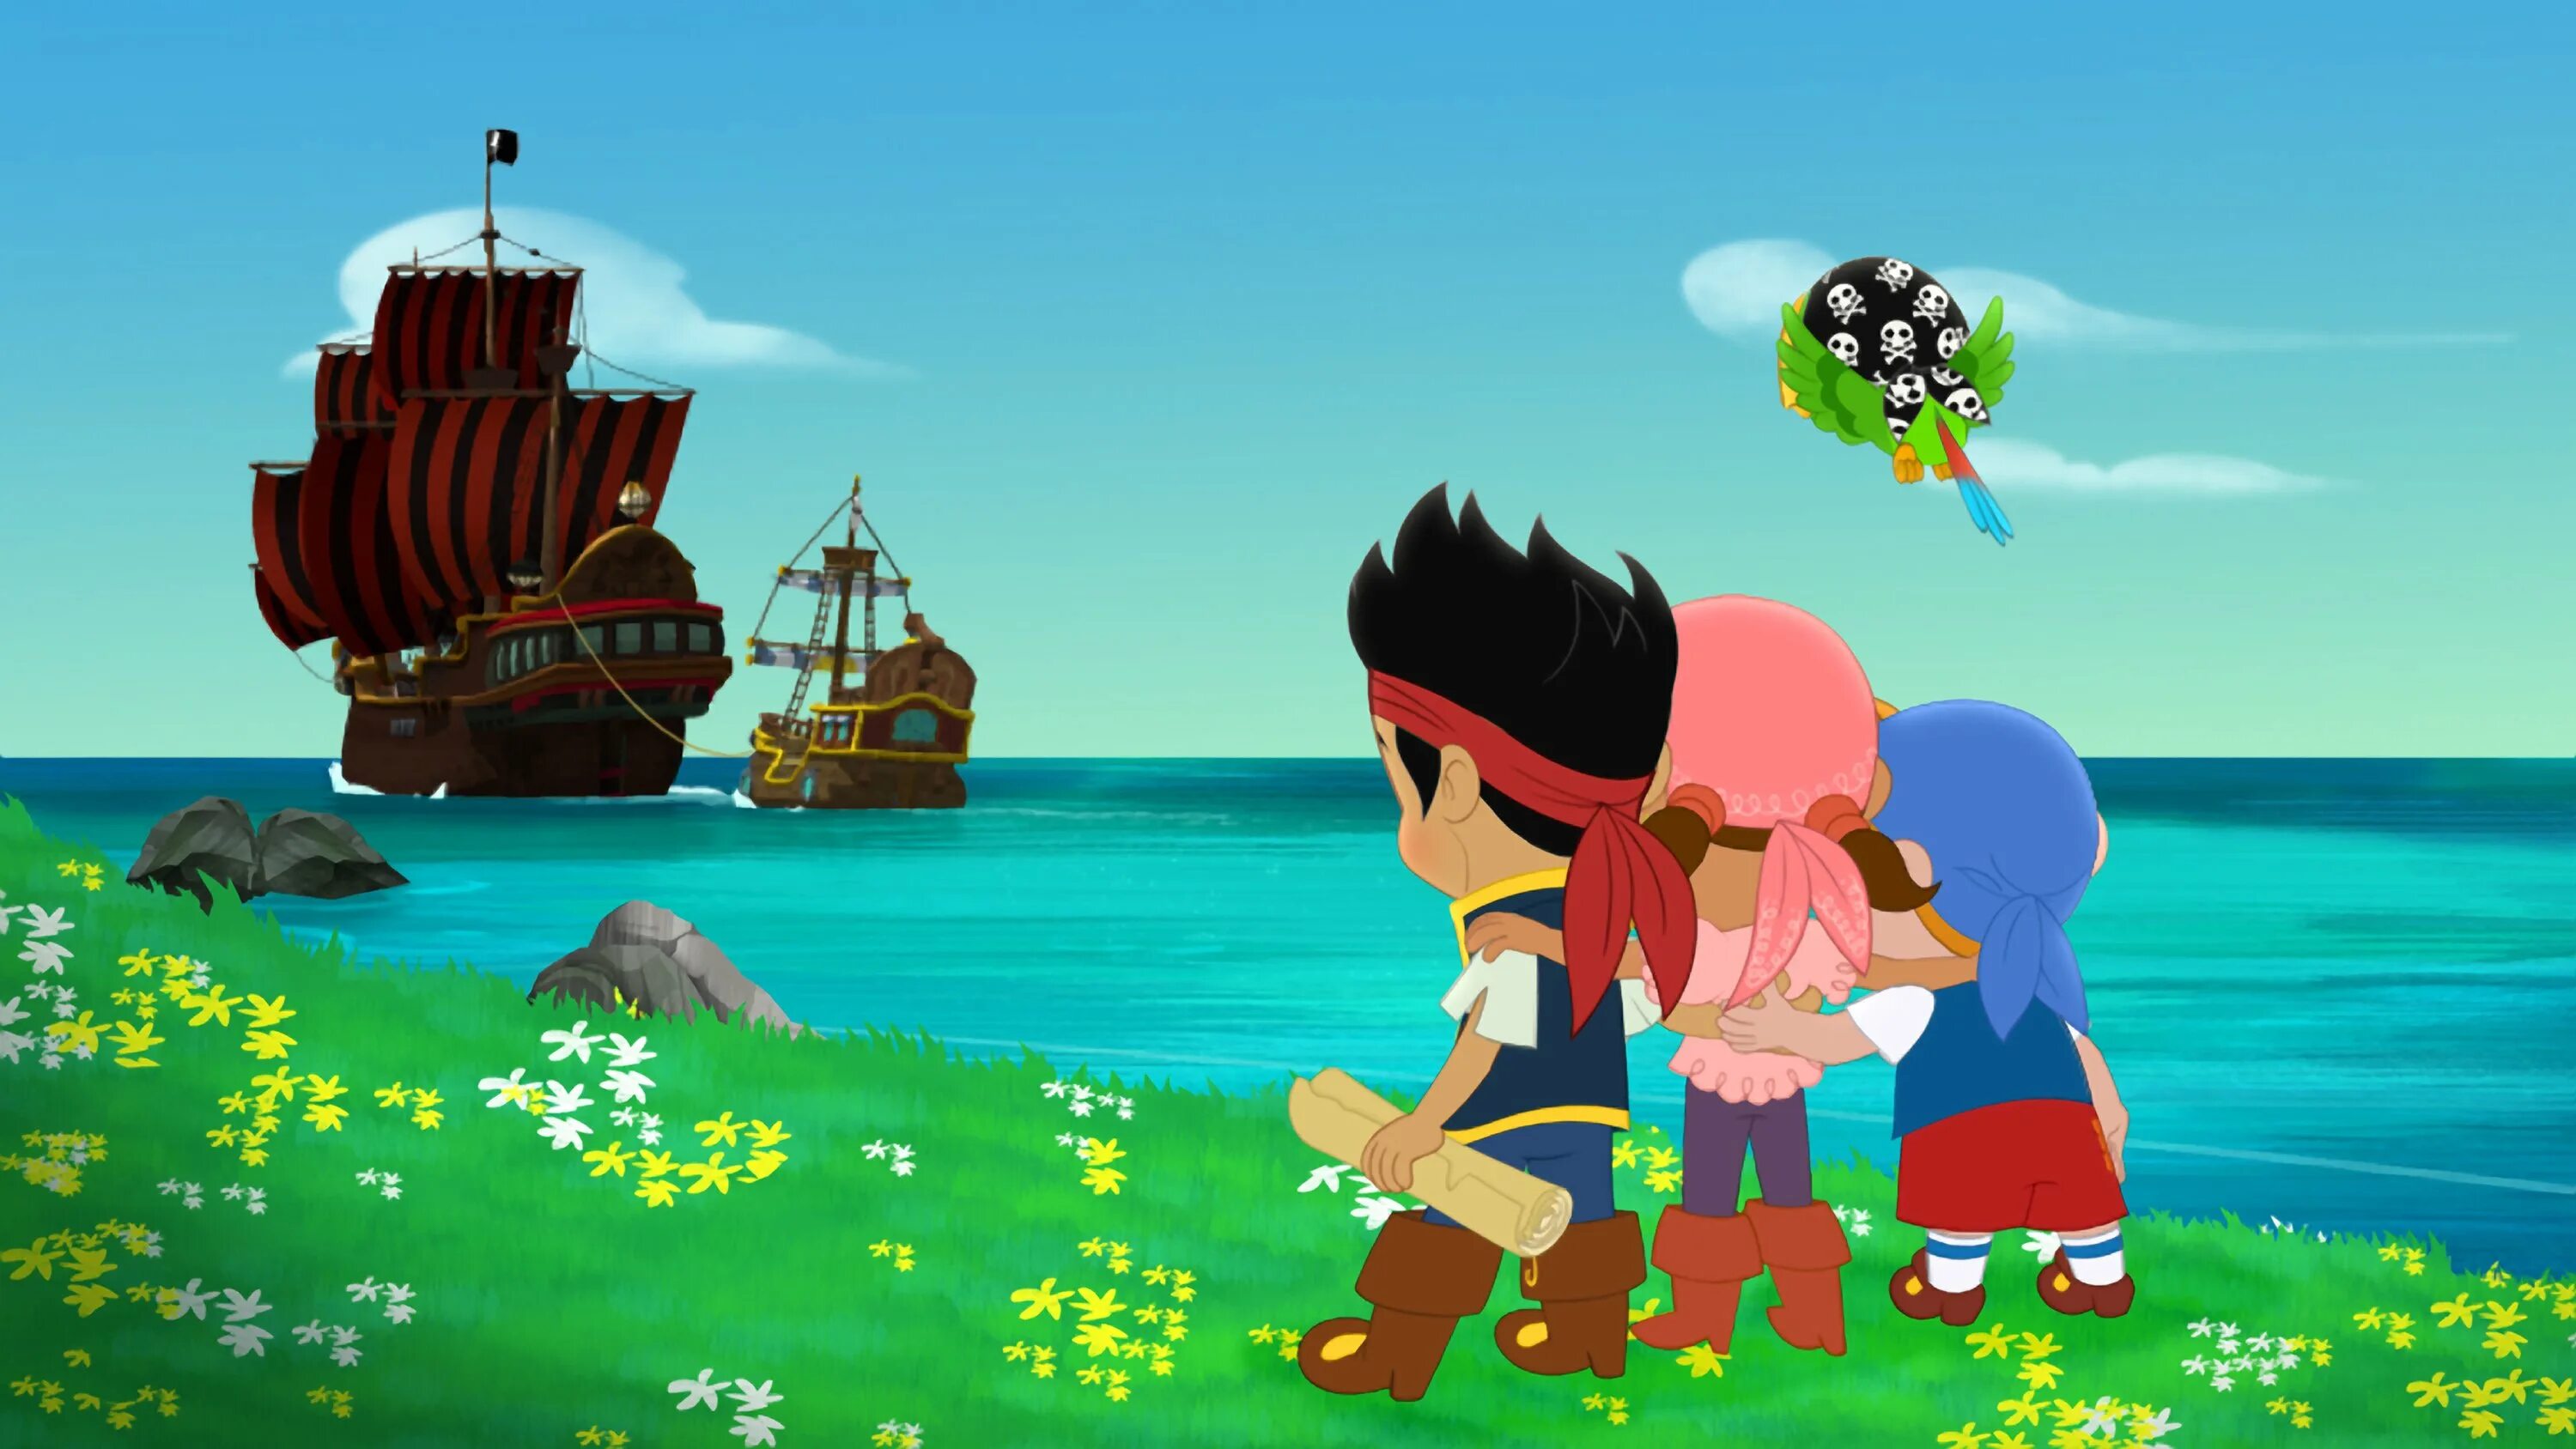 Острова где пираты. Джейк ипираты нитландии. Остров Джека и пиратов Нетландии. Джеки пираты Нетландии. Джейк и пираты Нетландии остров пиратов.